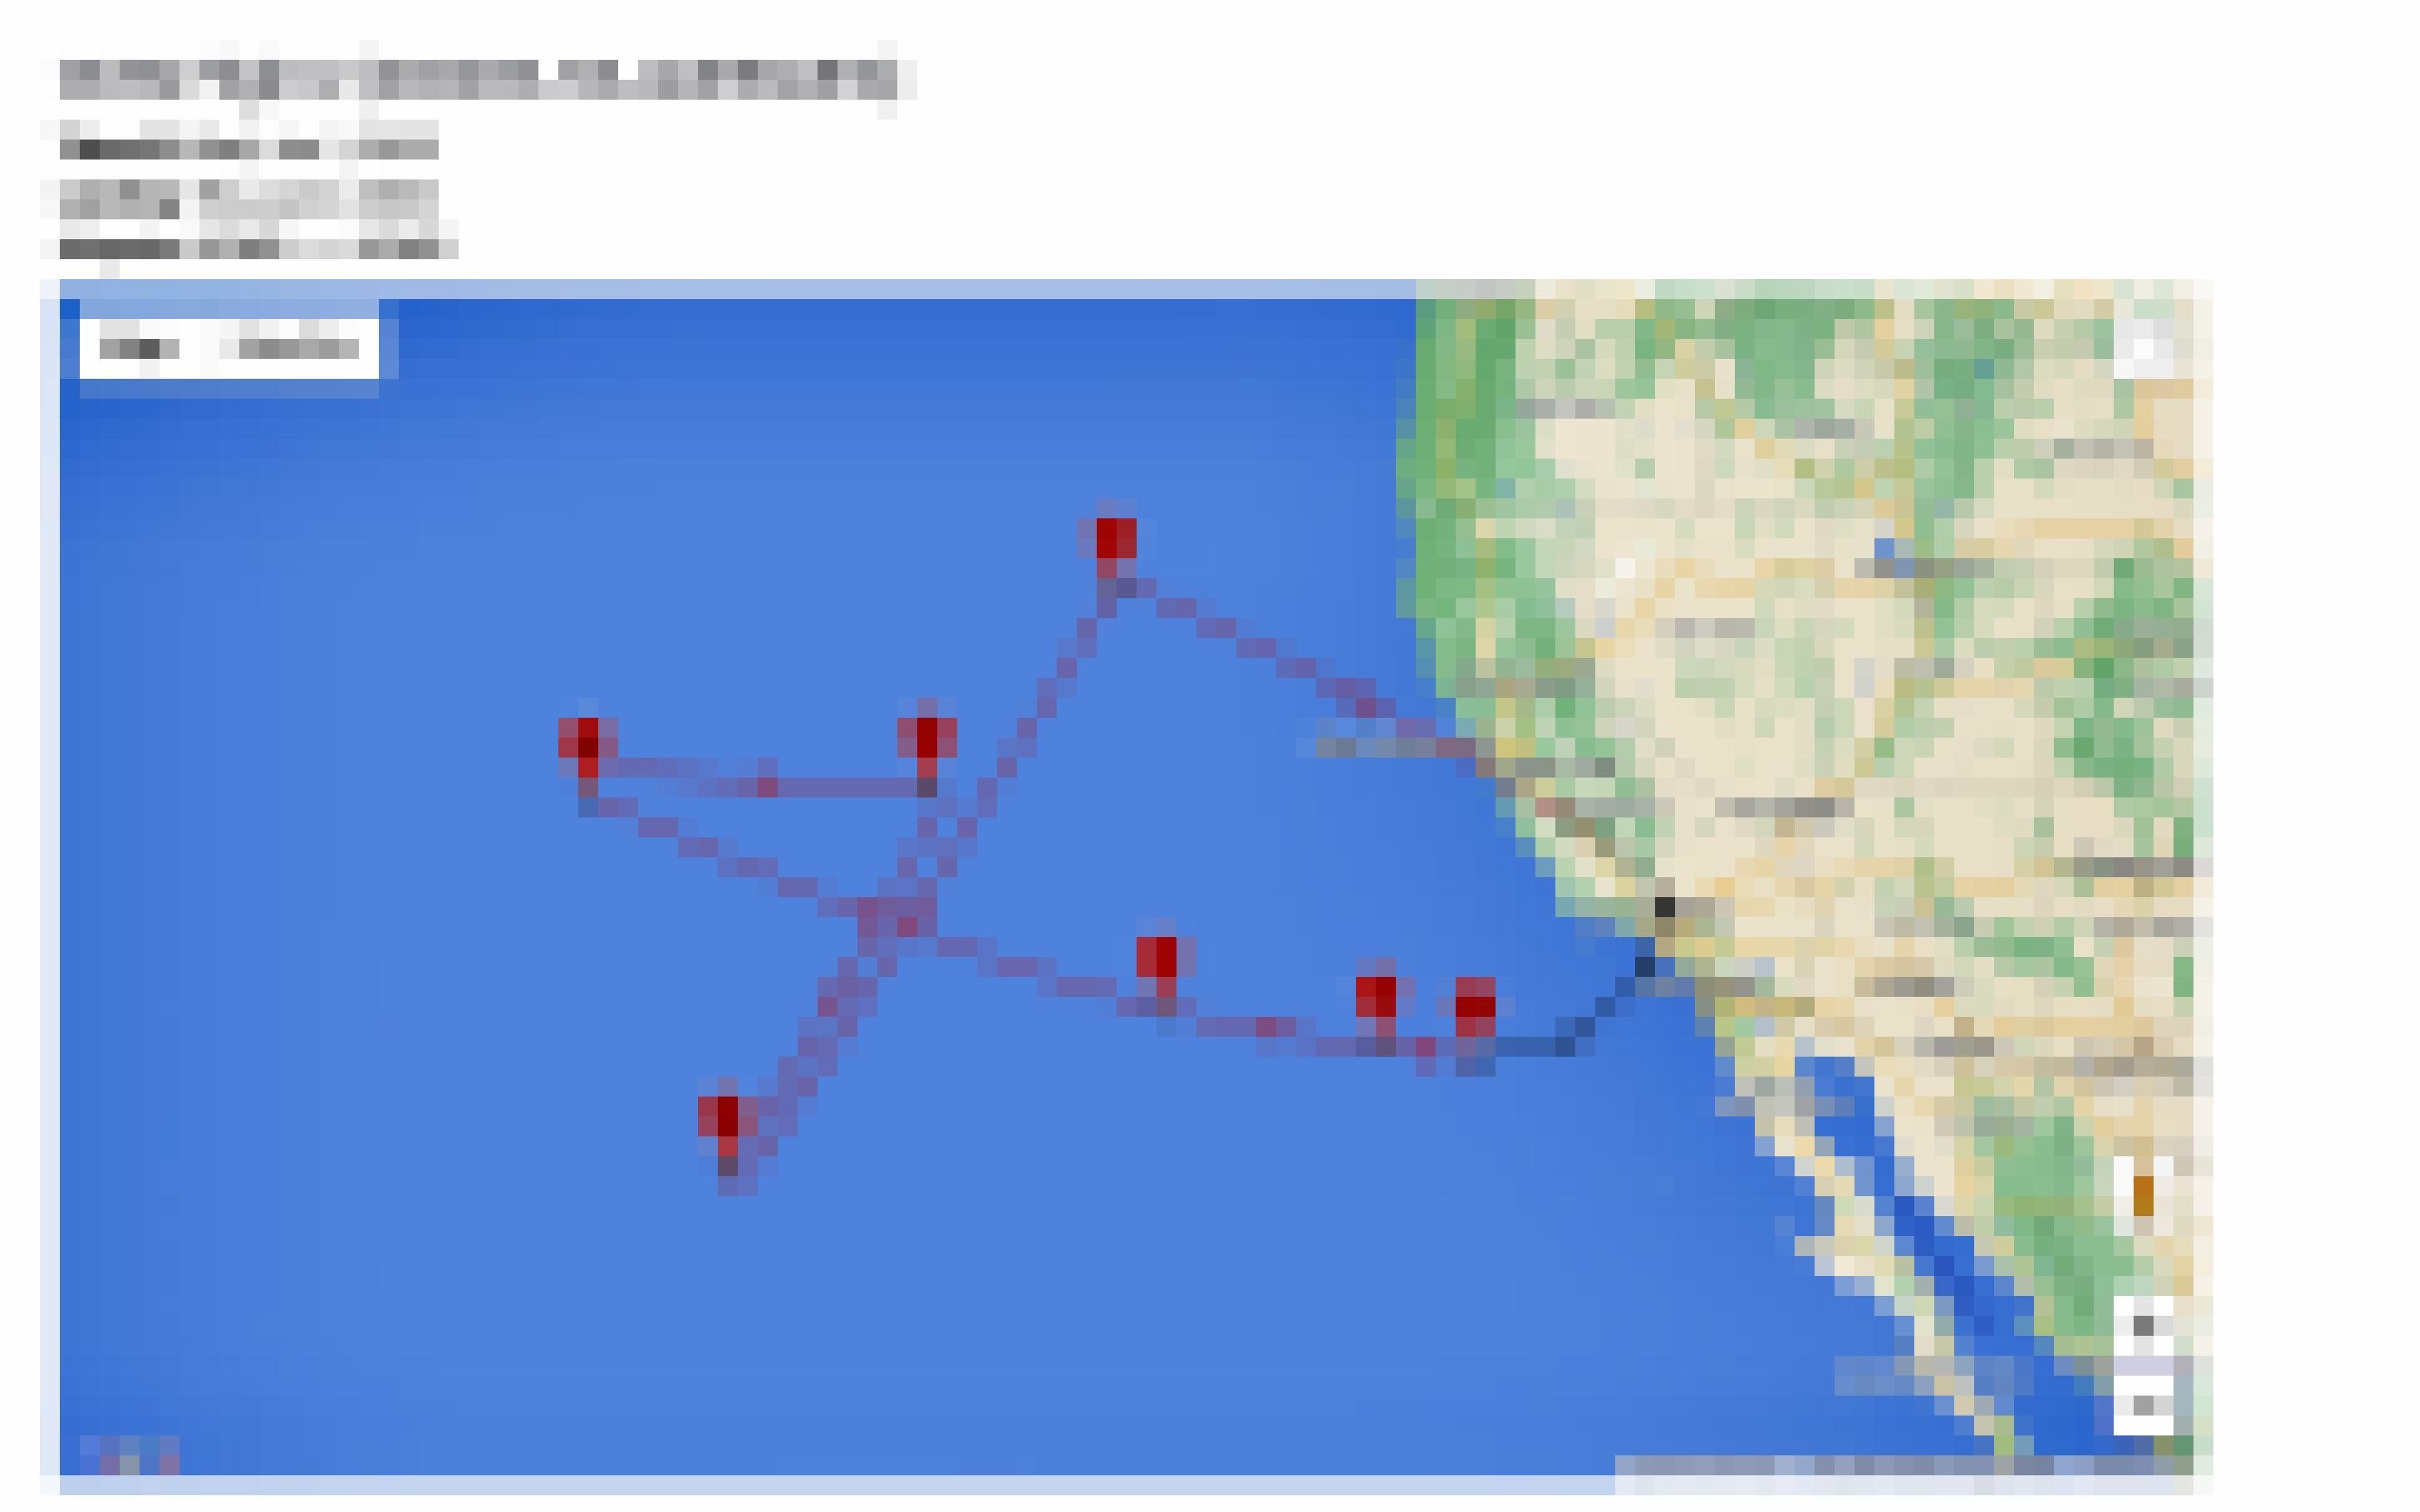 Der Flugplan für das fliegende Observatorium SOFIA sieht auf einer Landkarte aus wie sinnloses Kreuz und Quer über dem Pazifik bei Los Angeles. Dahinter steckt das Ziel, das Teleskop so lange wie möglich auf die anvisierten Galaxien auszurichten